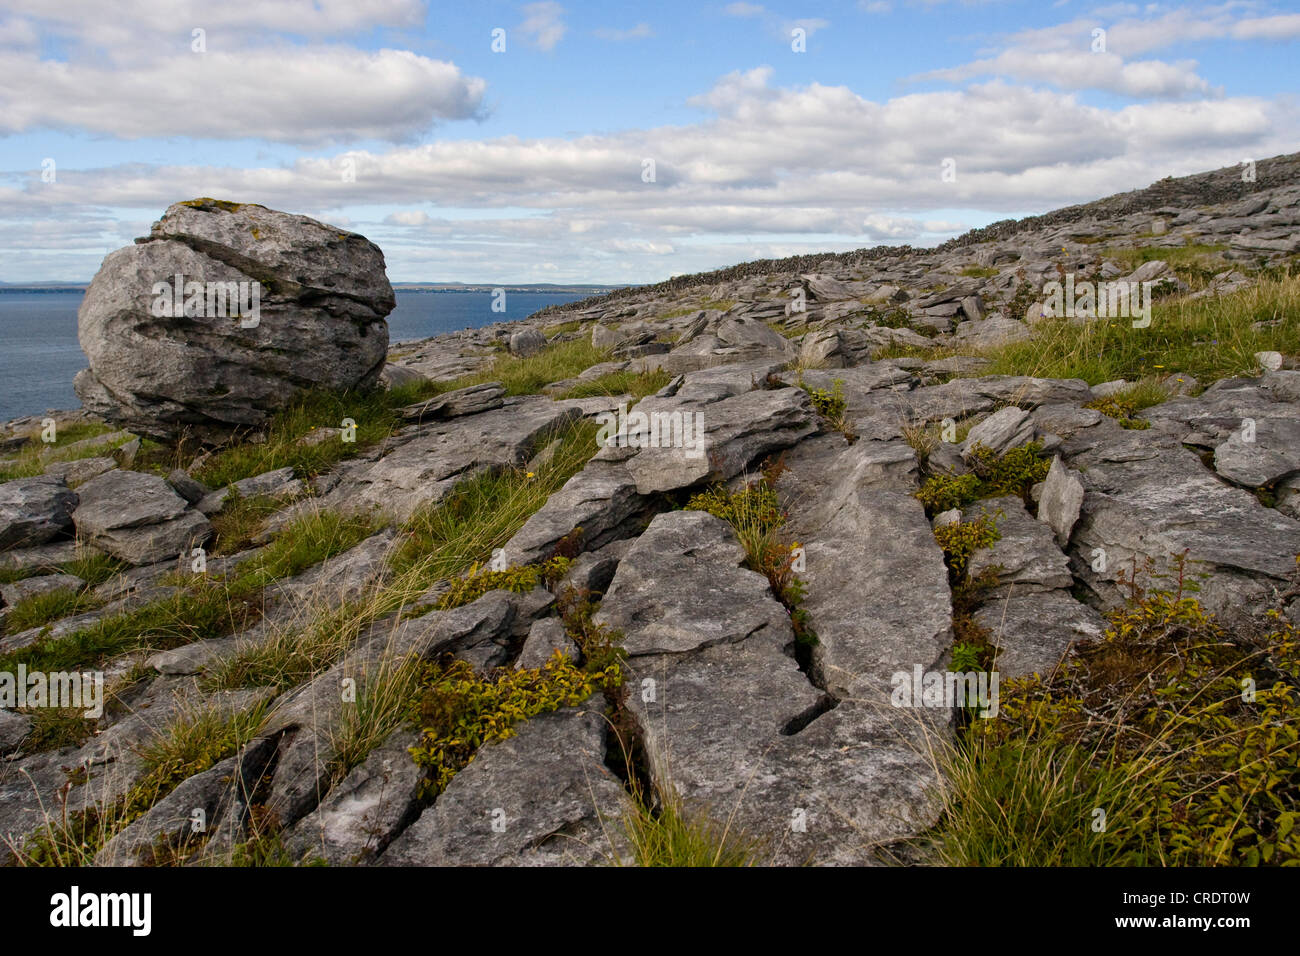 Burren landscape, Ireland, Clarens, The Burren Stock Photo